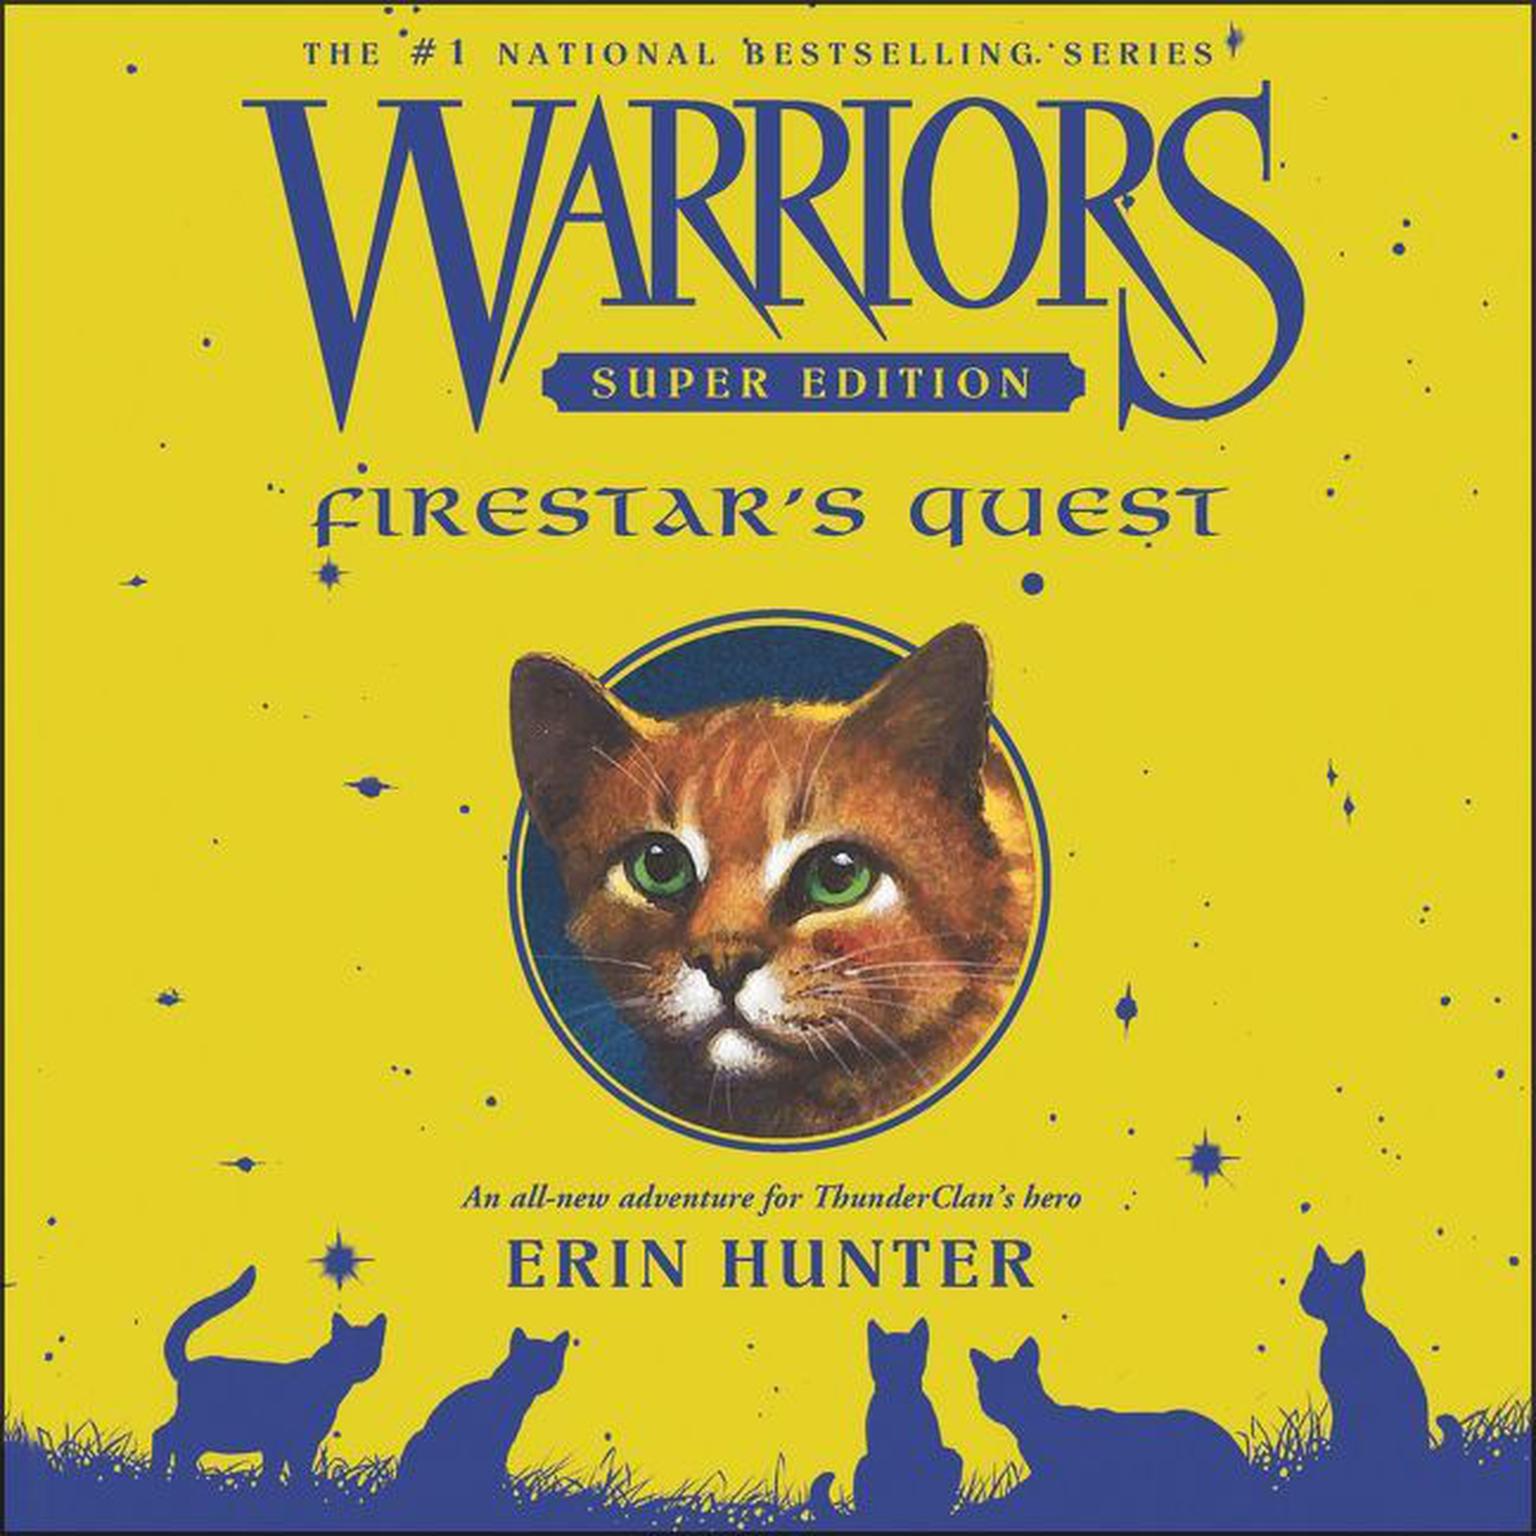 Warriors Super Edition: Firestars Quest Audiobook, by Erin Hunter